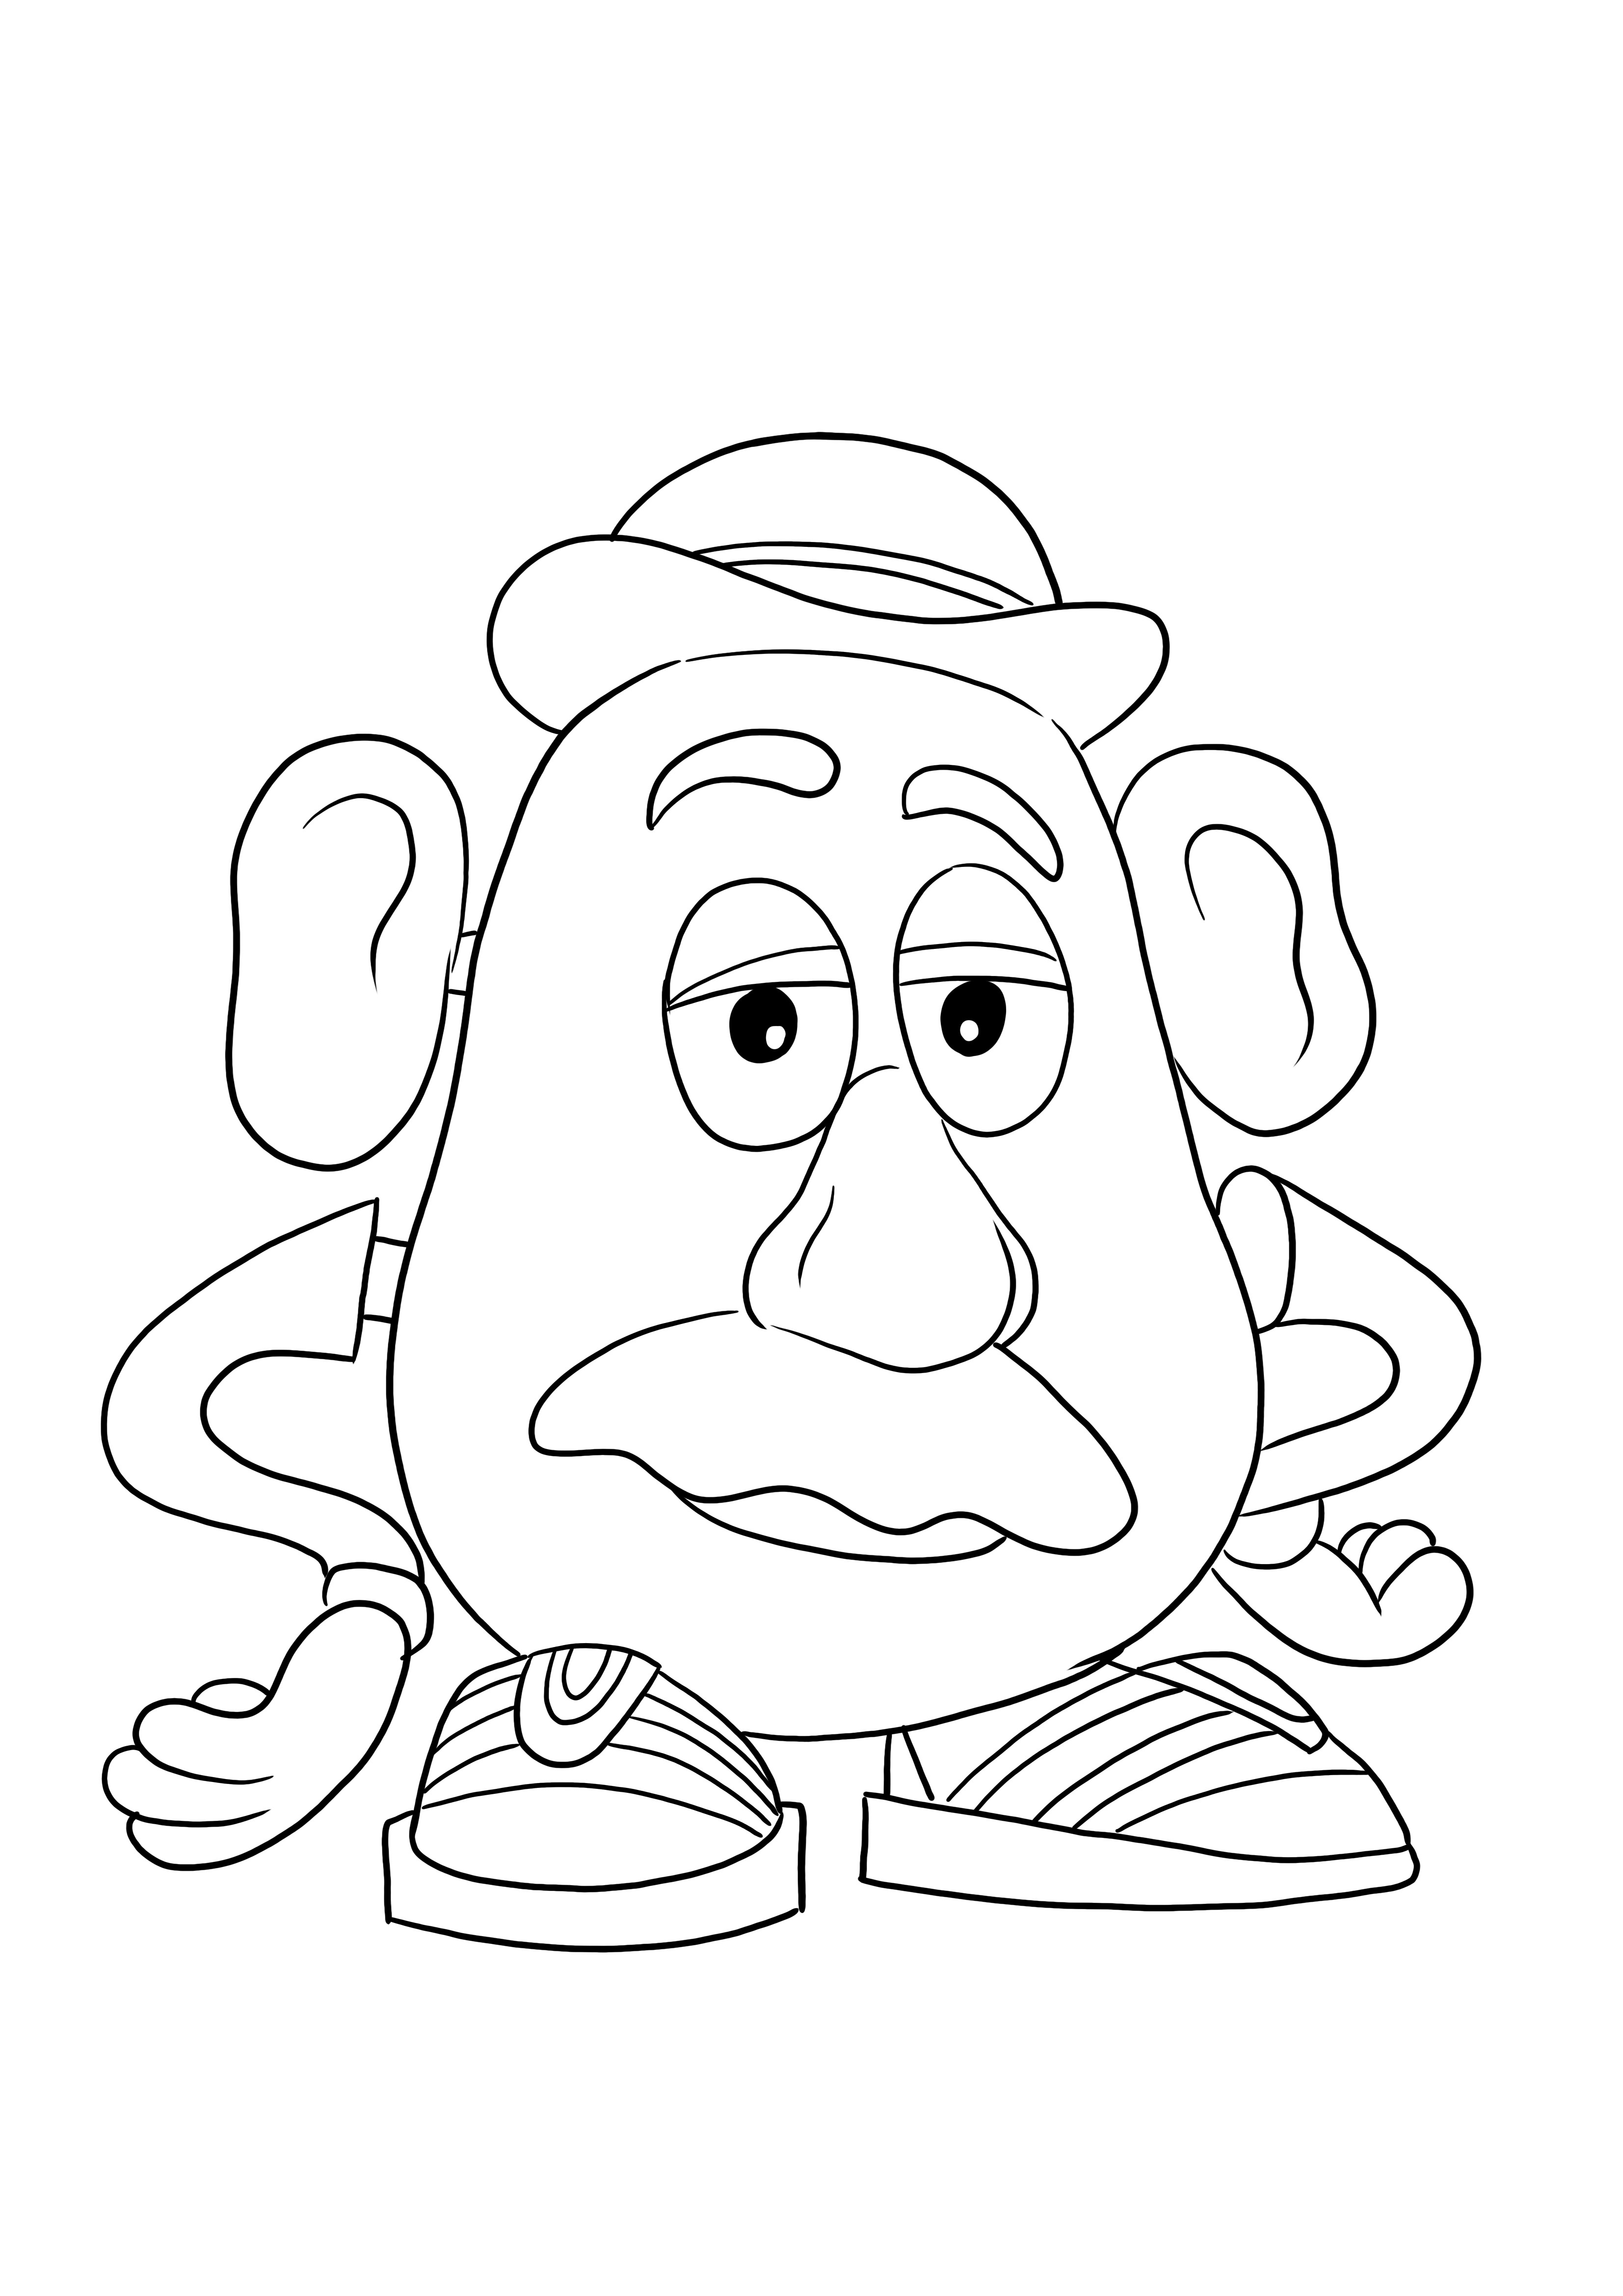 Mister Potato Head gratis te downloaden afbeelding voor kinderen om gemakkelijk te kleuren kleurplaat